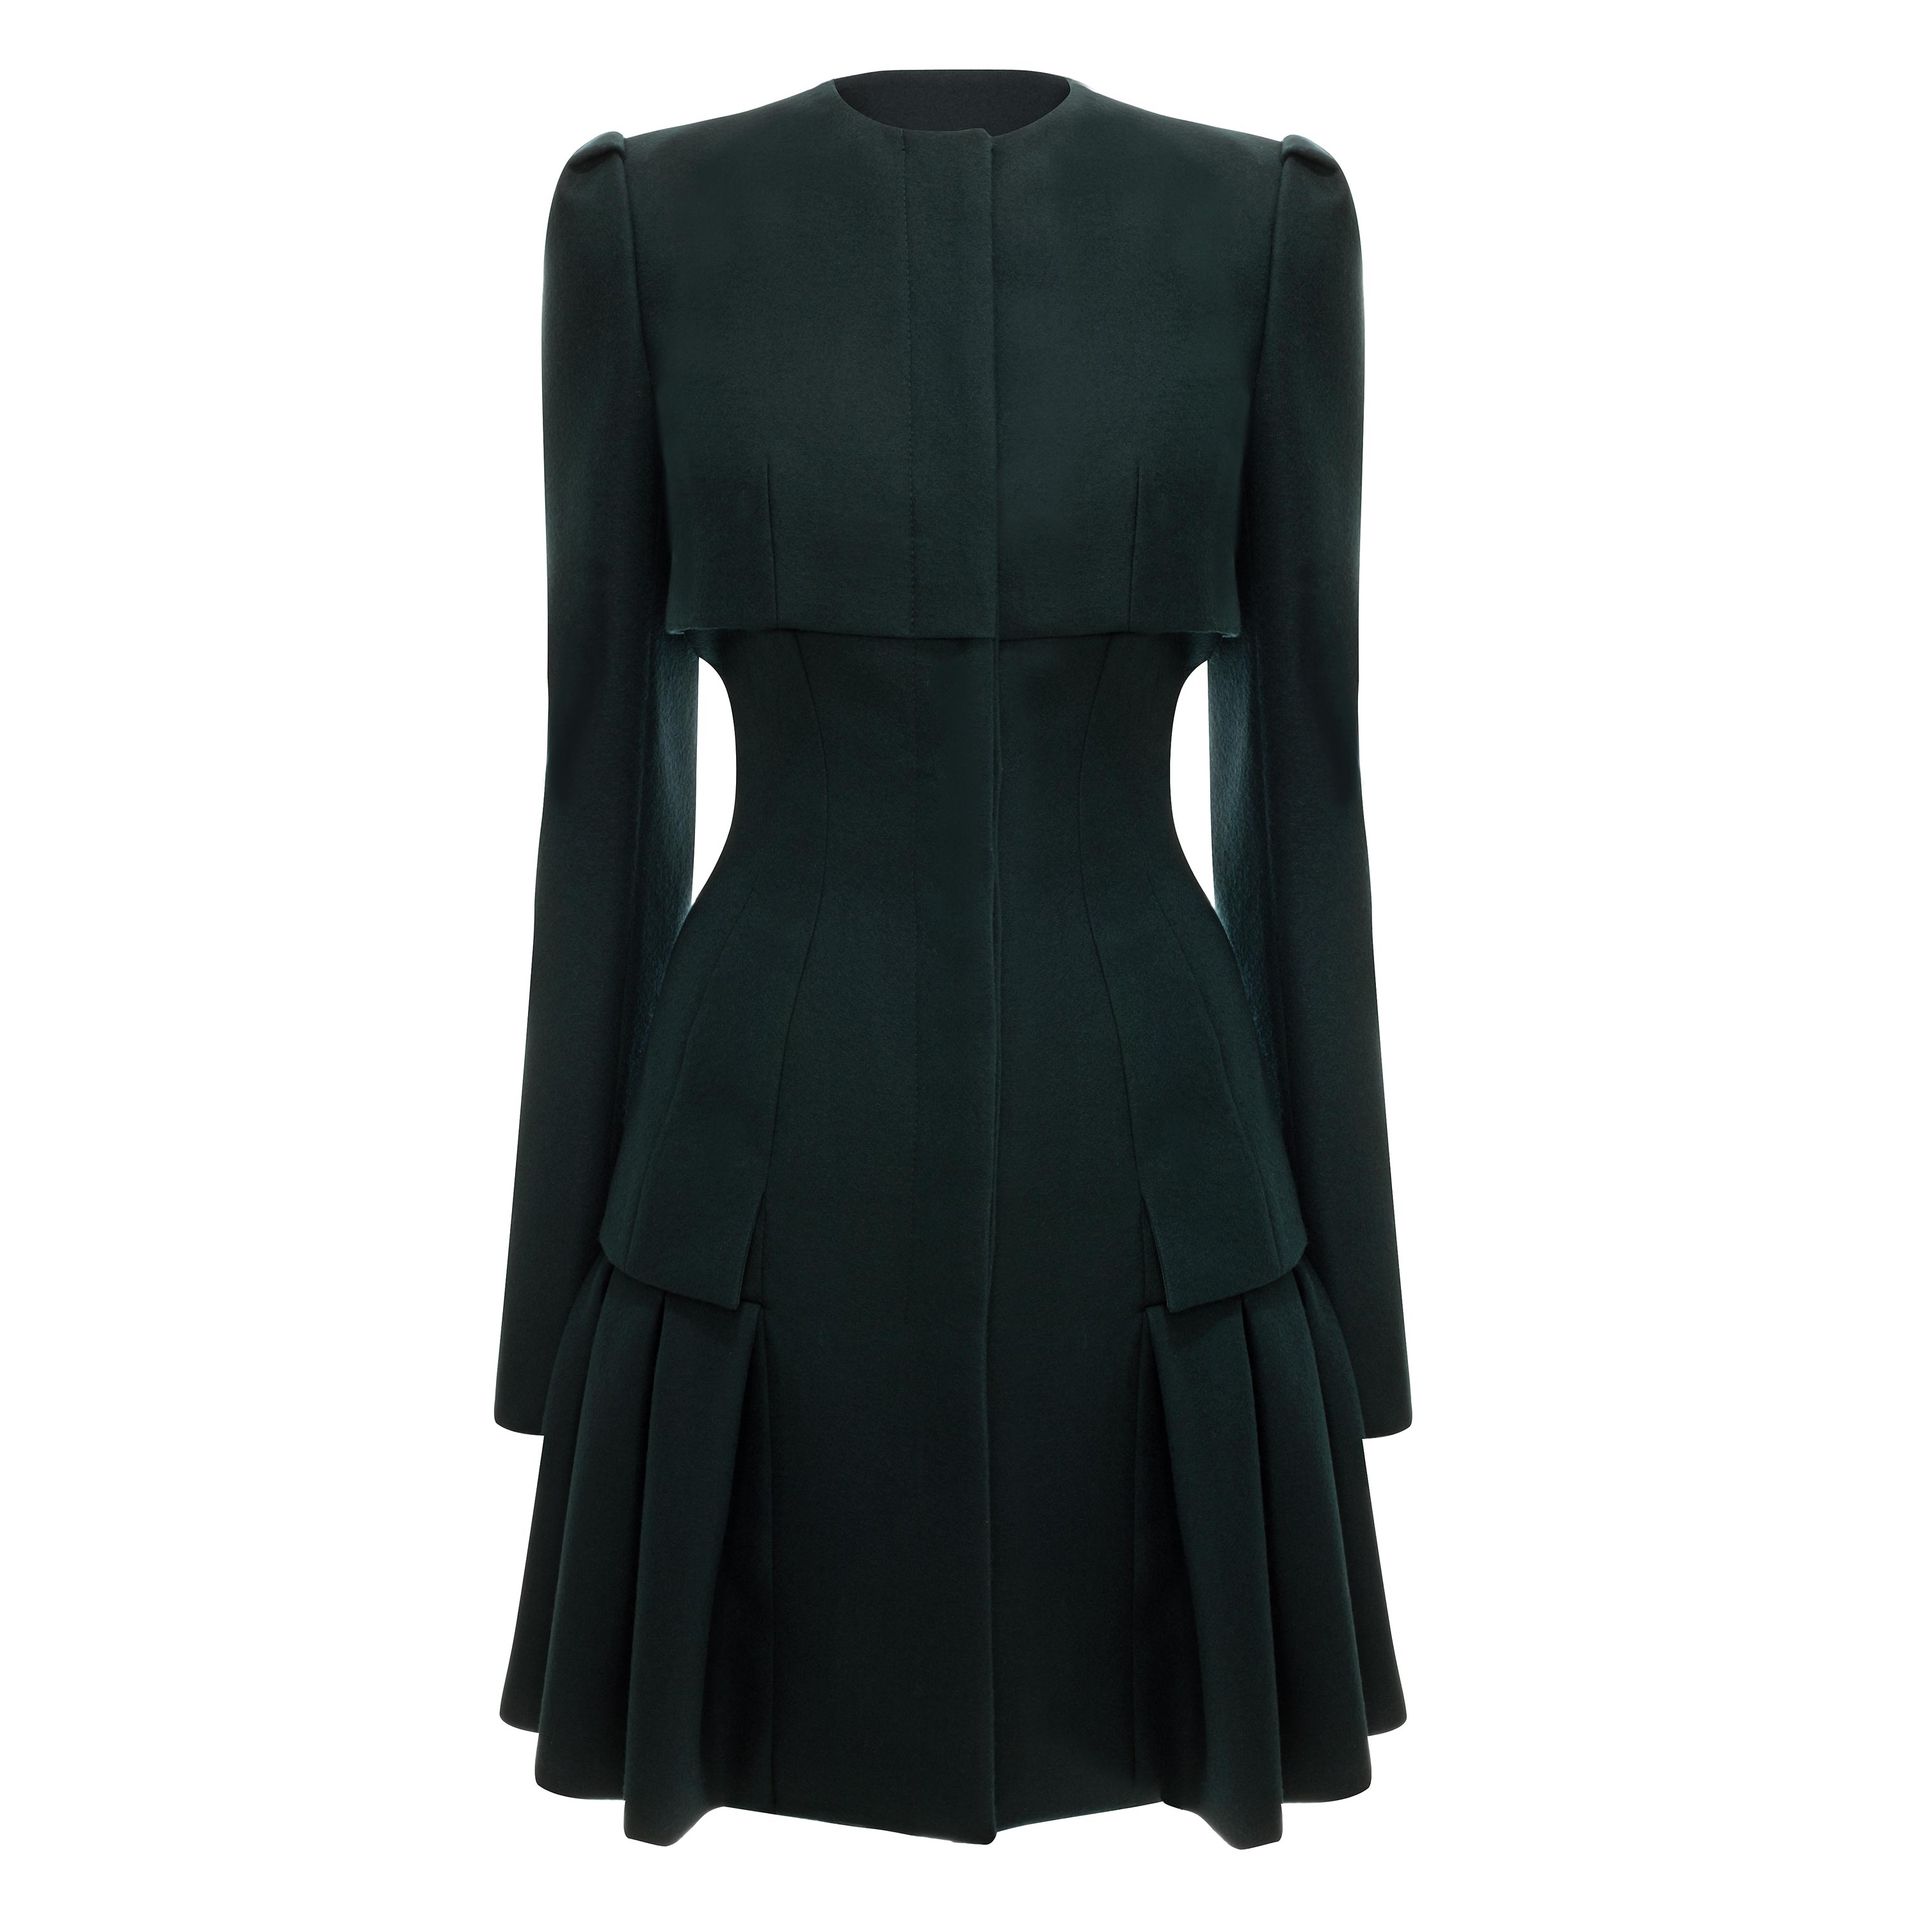 Alexander McQueen Bullet Pleat Short Coat Dress in Green - Lyst